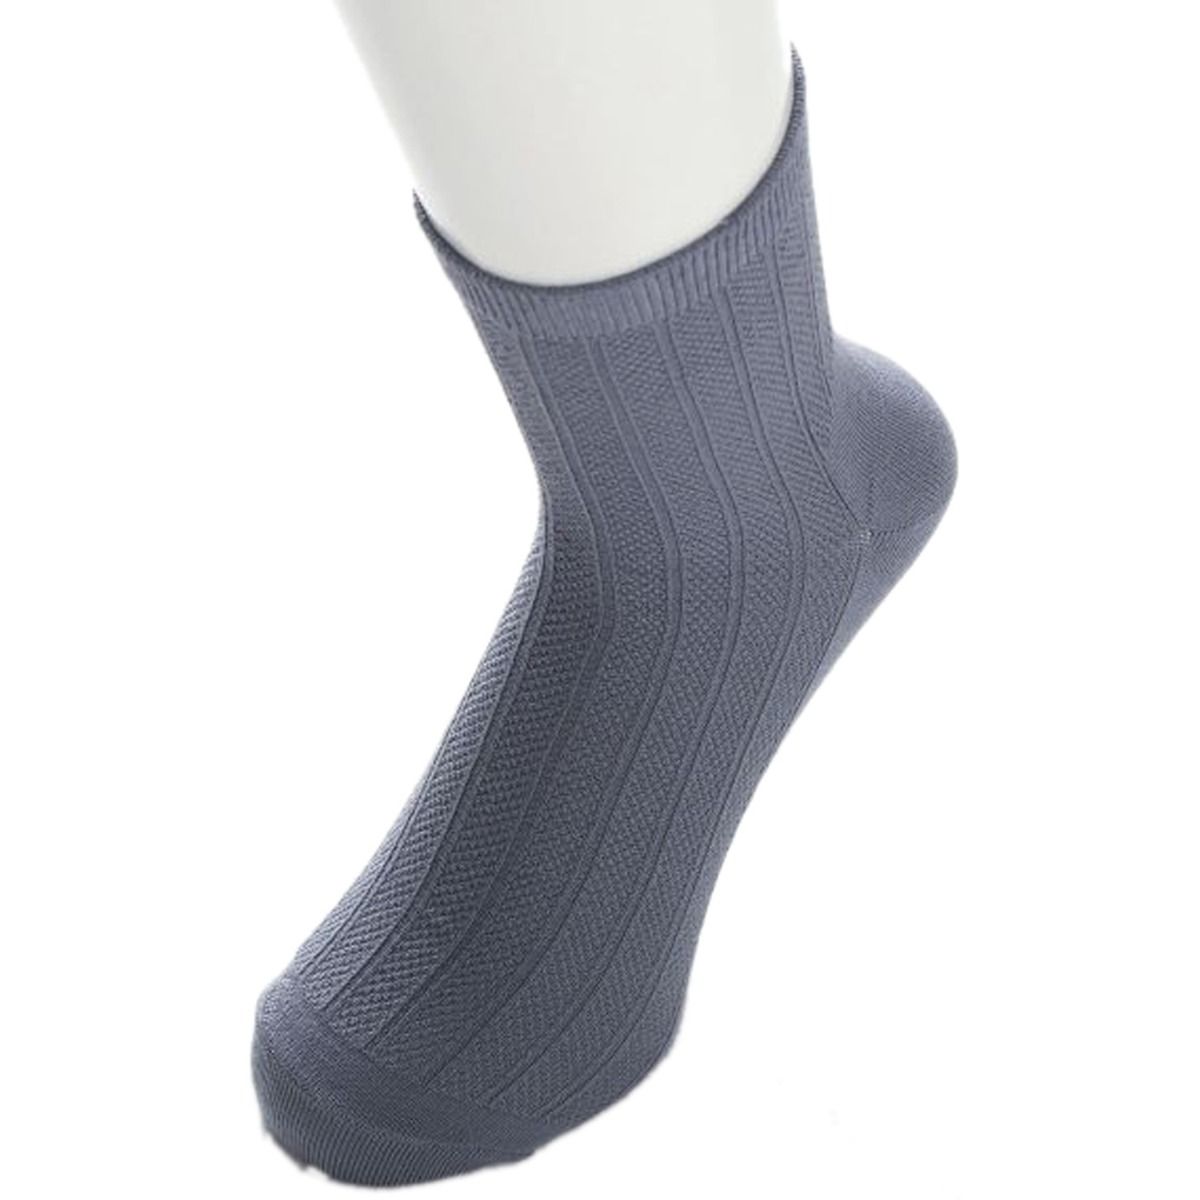 Buy Breathe Fiber Socks For Men 26 -28 cm, 1 Pair Online